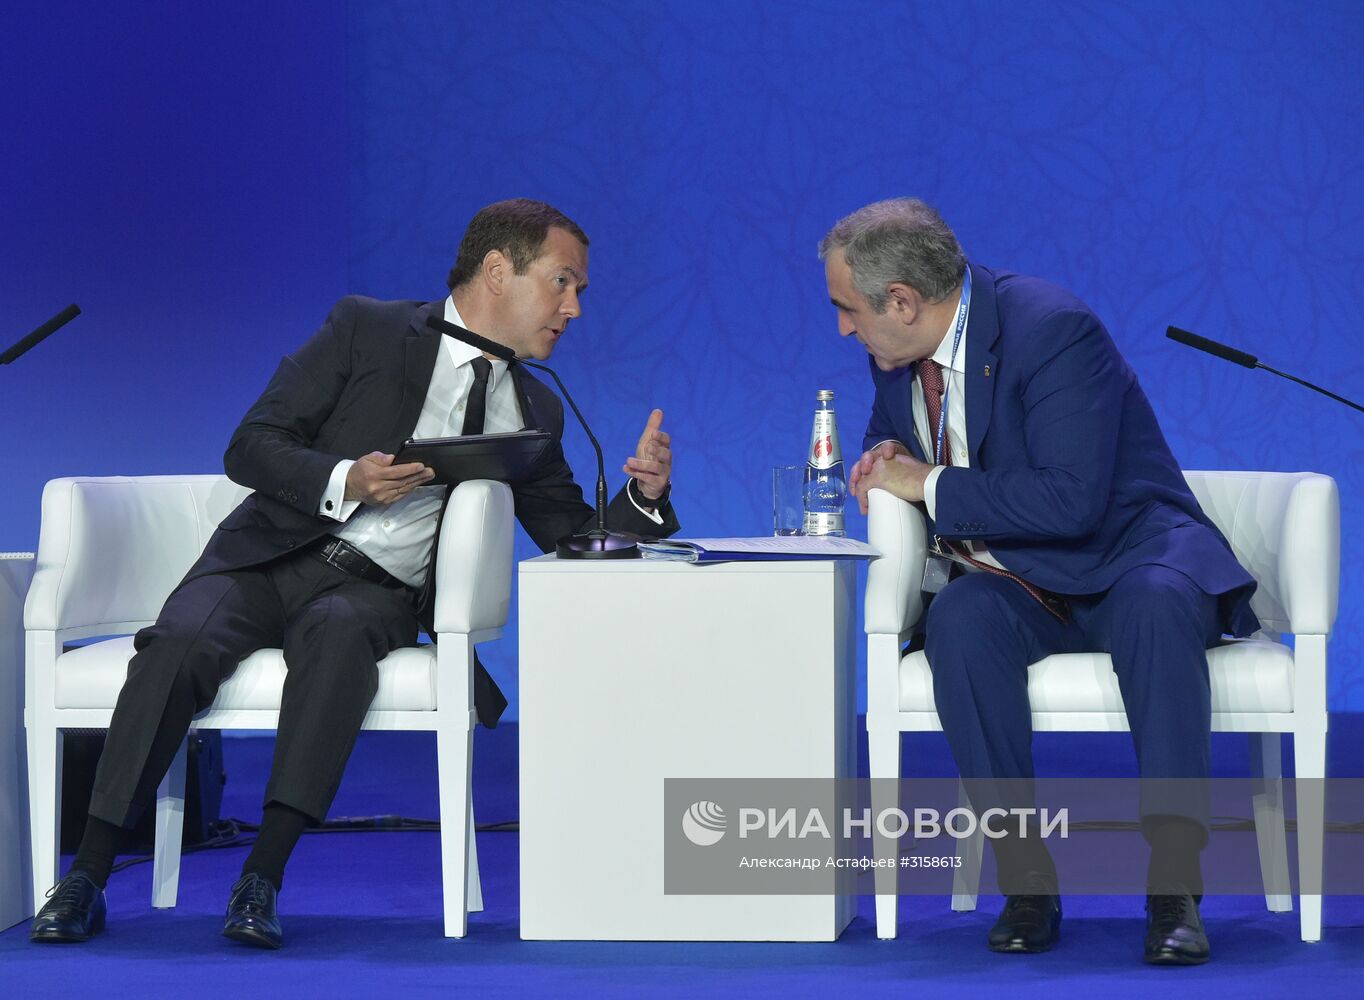 Рабочая поездка премьер-министра РФ Д. Медведева в Южный федеральный округ